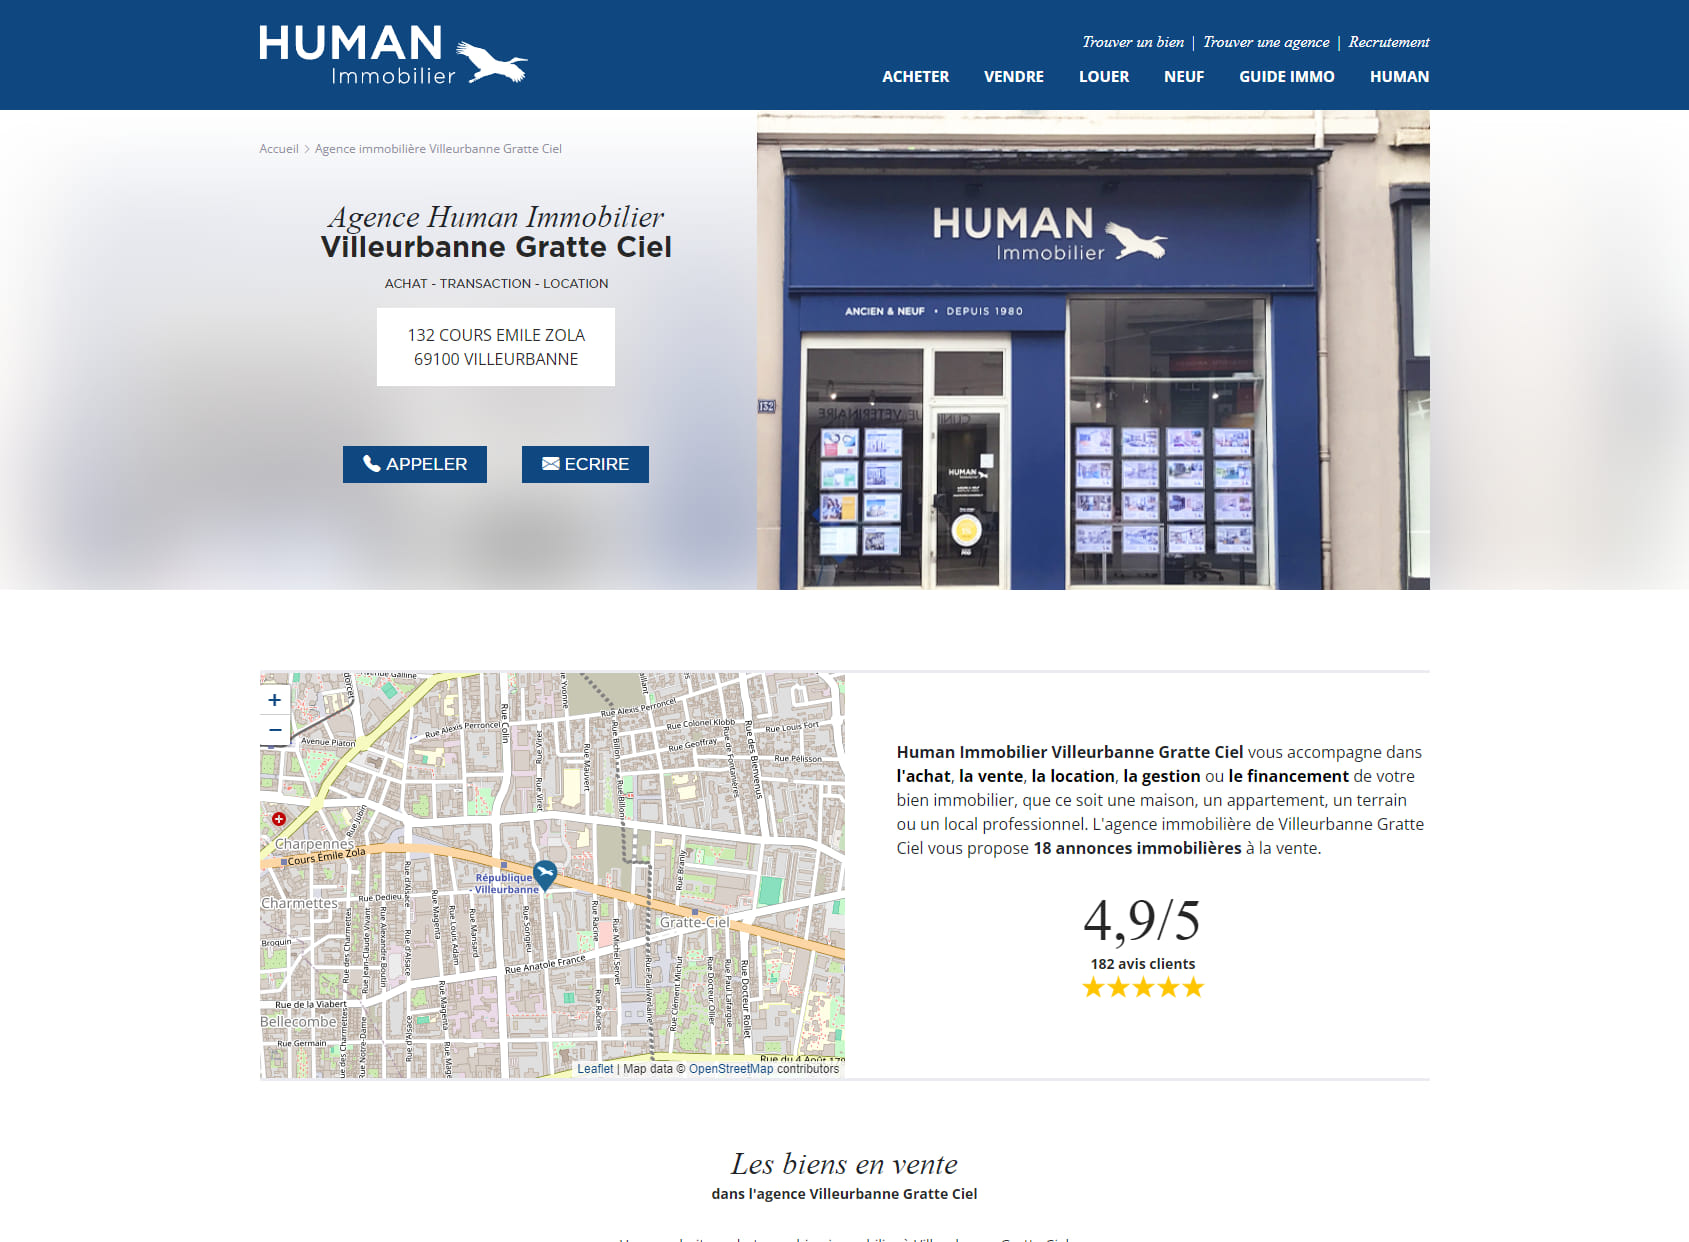 Human Immobilier Villeurbanne Gratte-Ciel